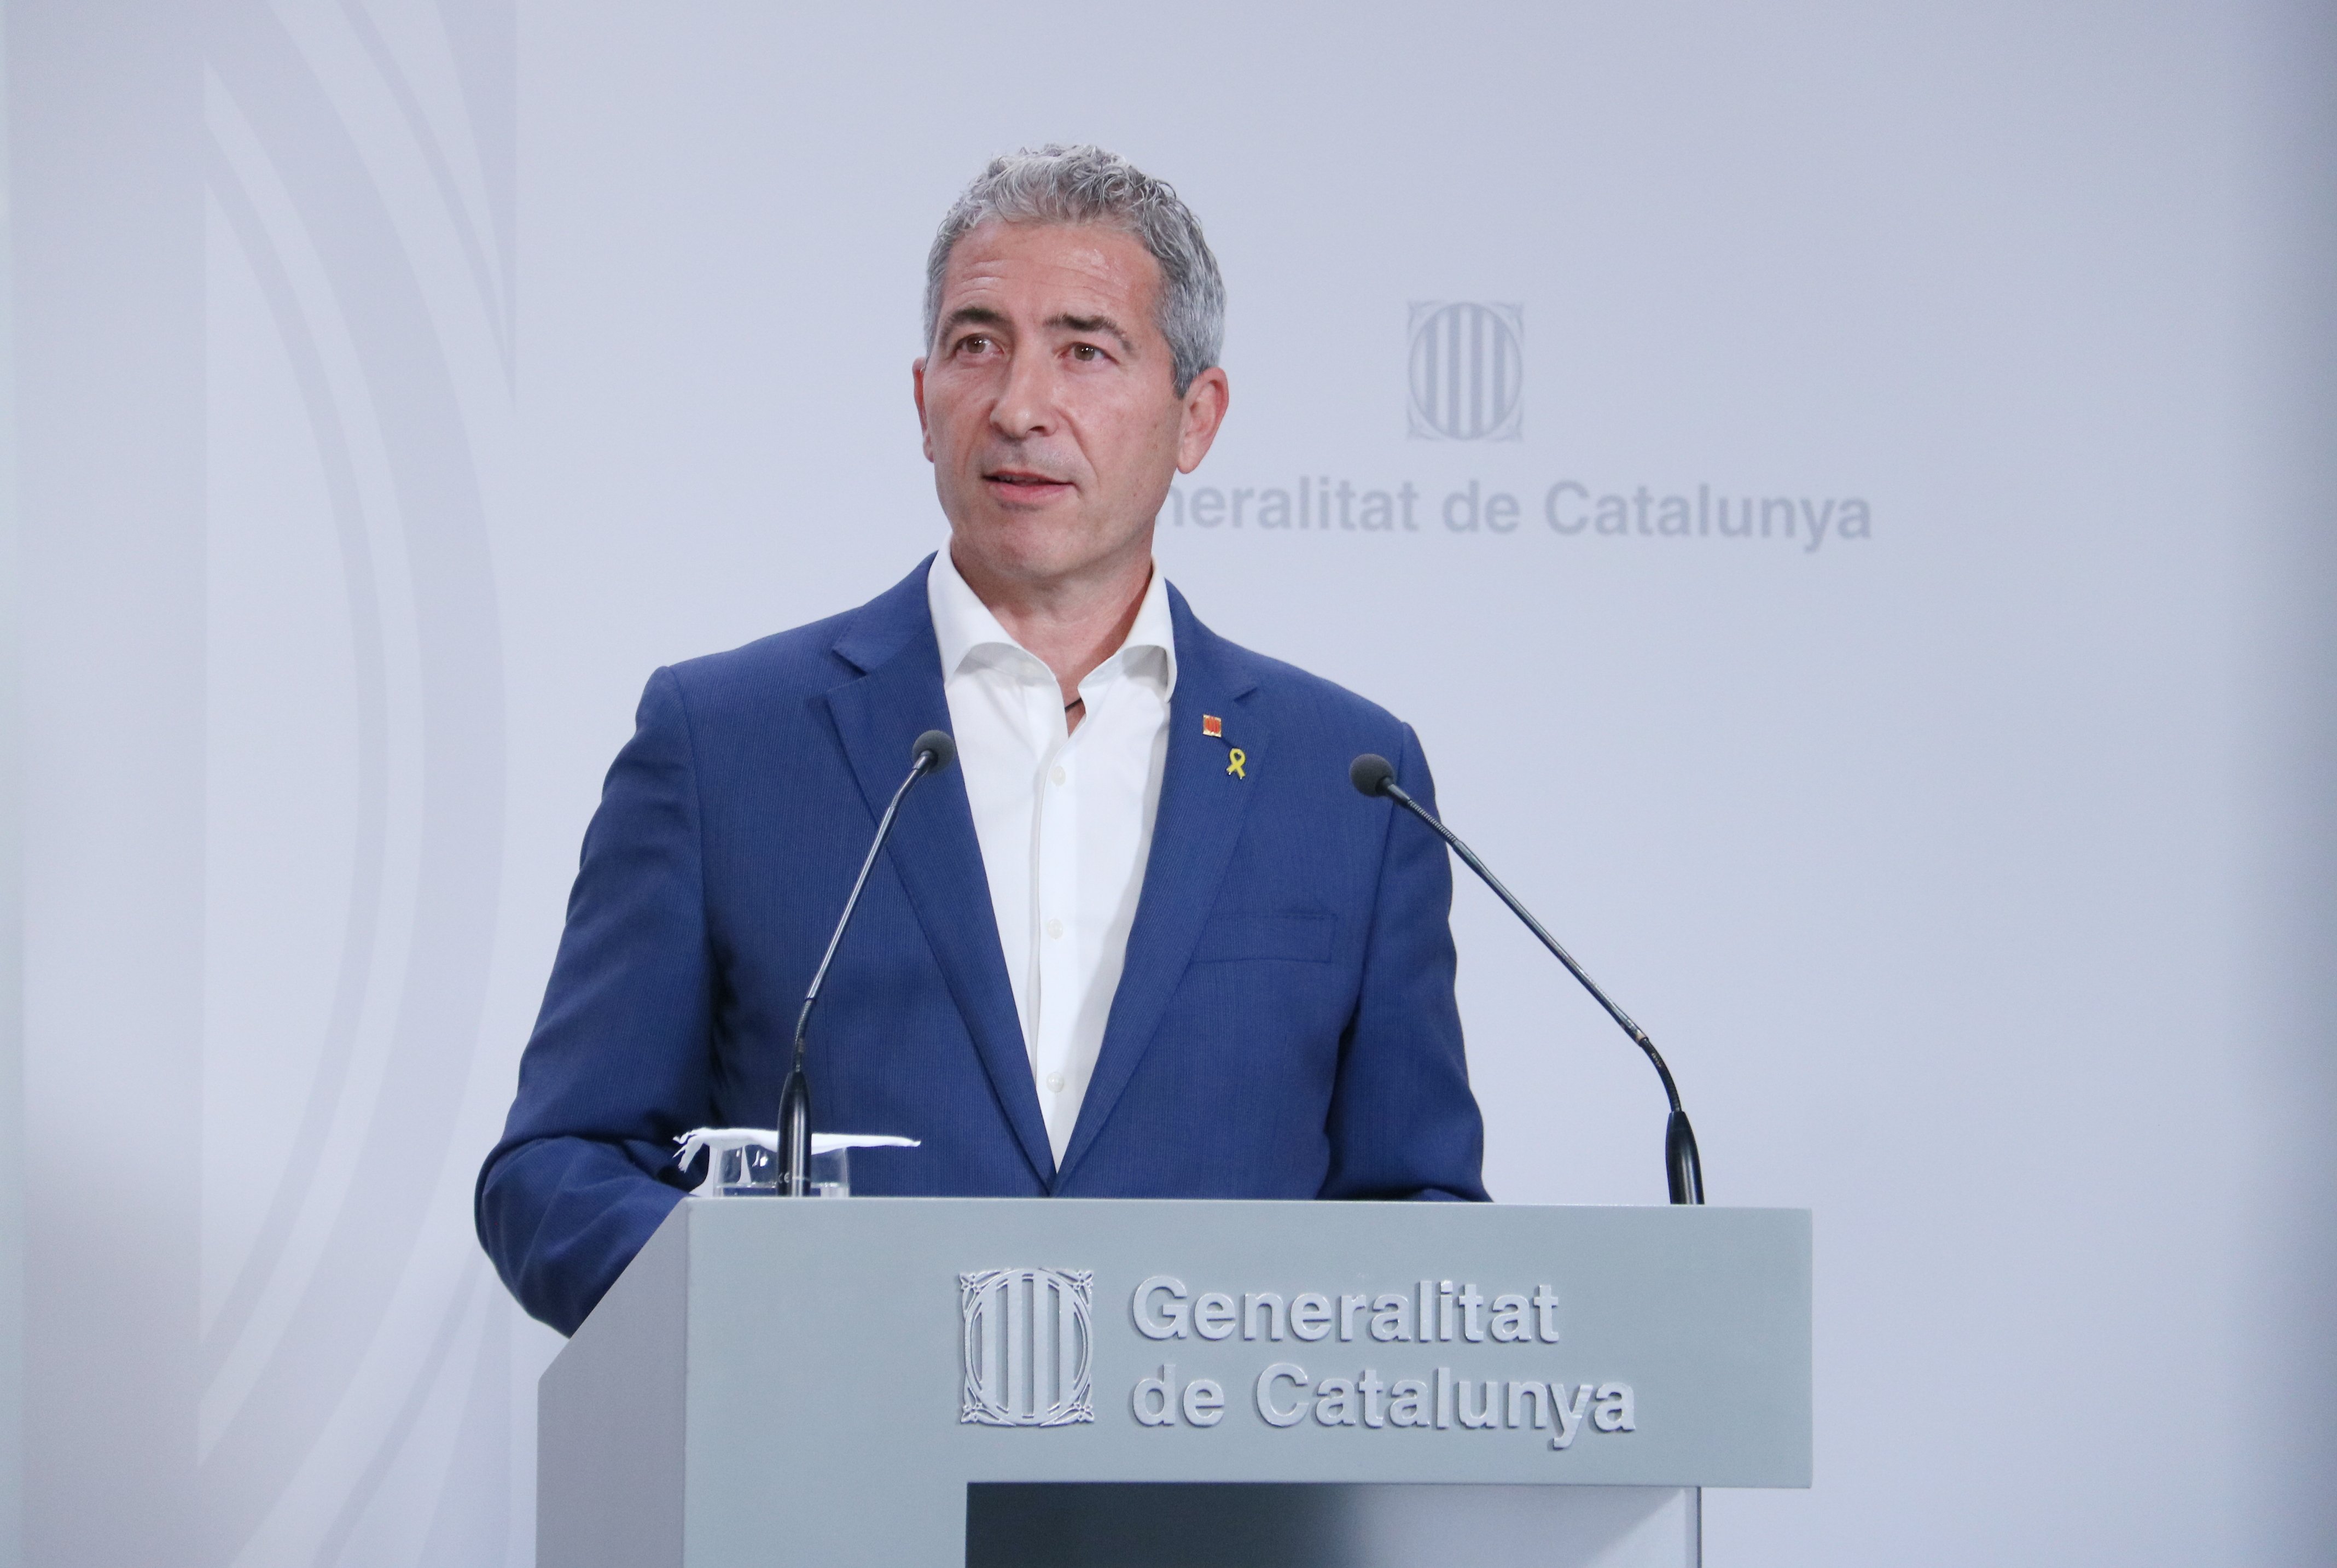 Cambray reclama más concienciación entre los docentes para promover el catalán